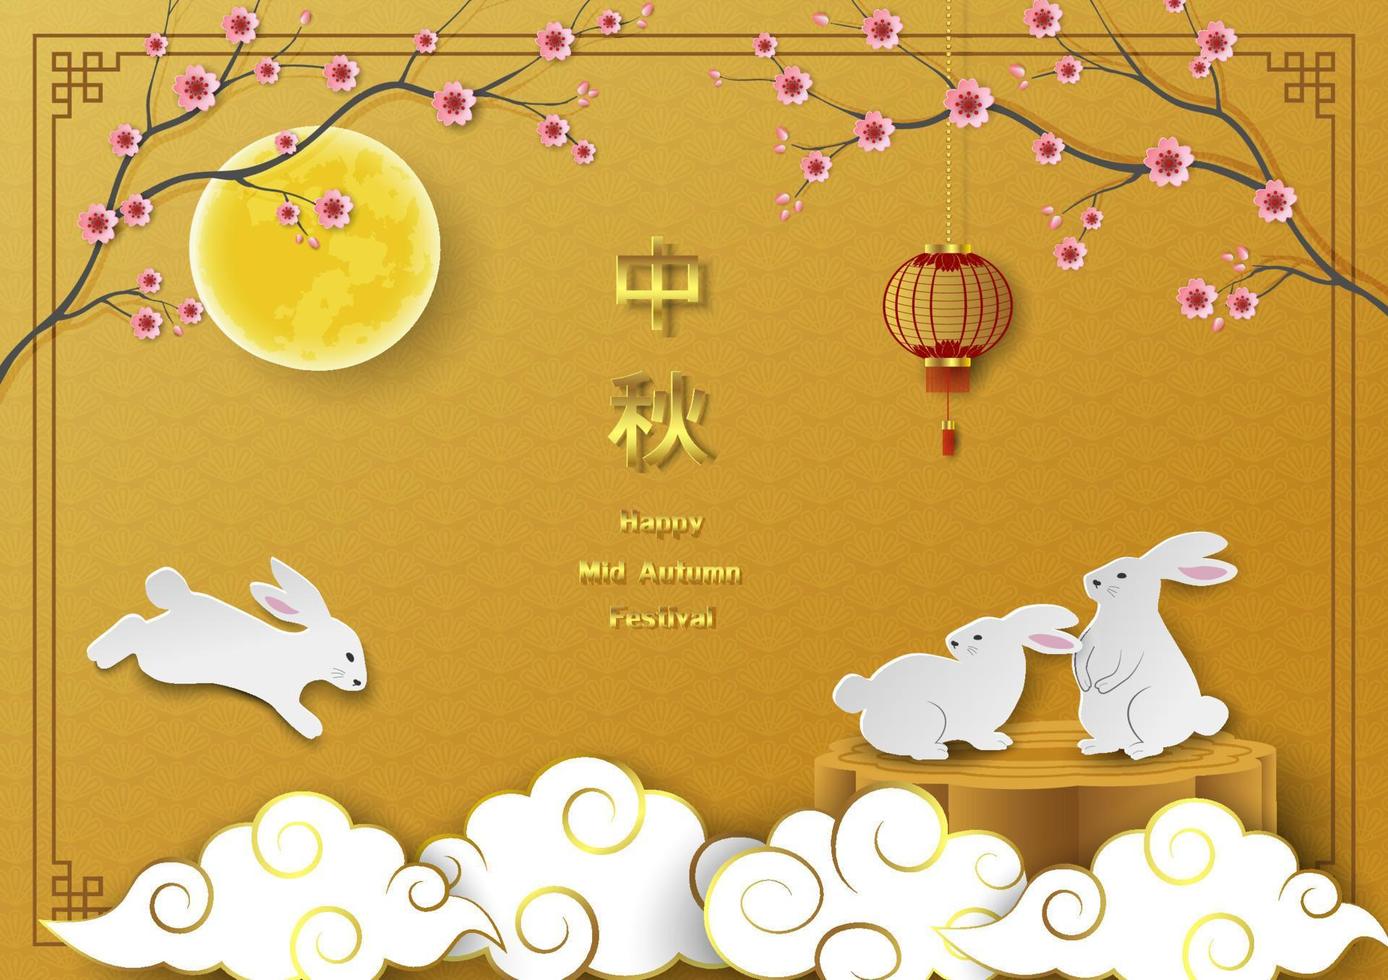 festival de mediados de otoño, tema de celebración con lindos conejos, luna llena, farol, flor de cerezo y pastel de luna sobre fondo chino vector